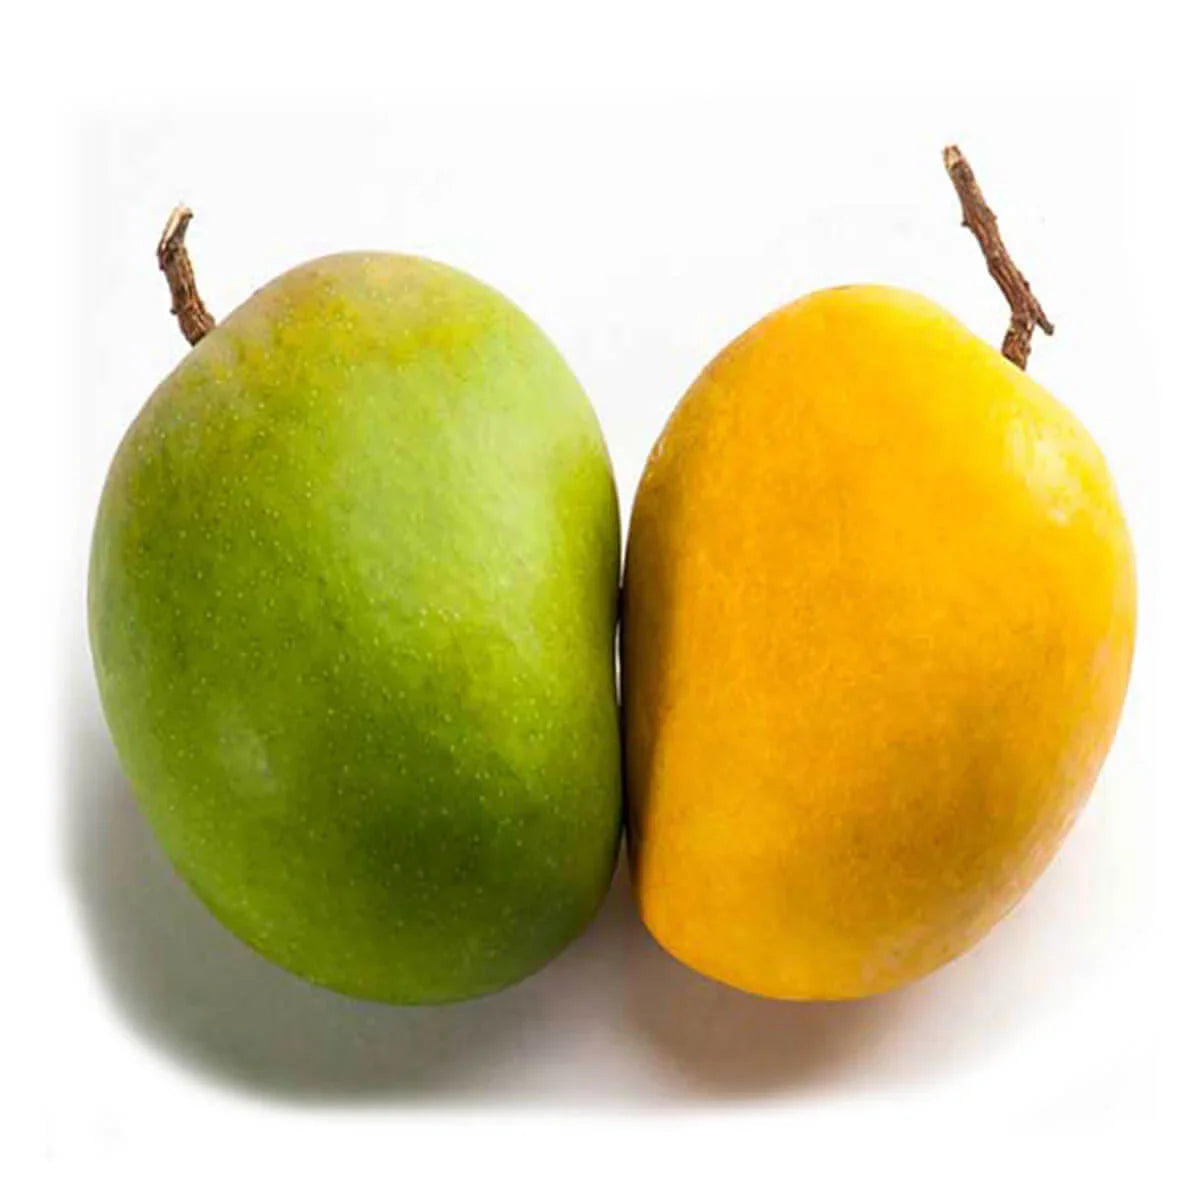 Himsagar Mangoes